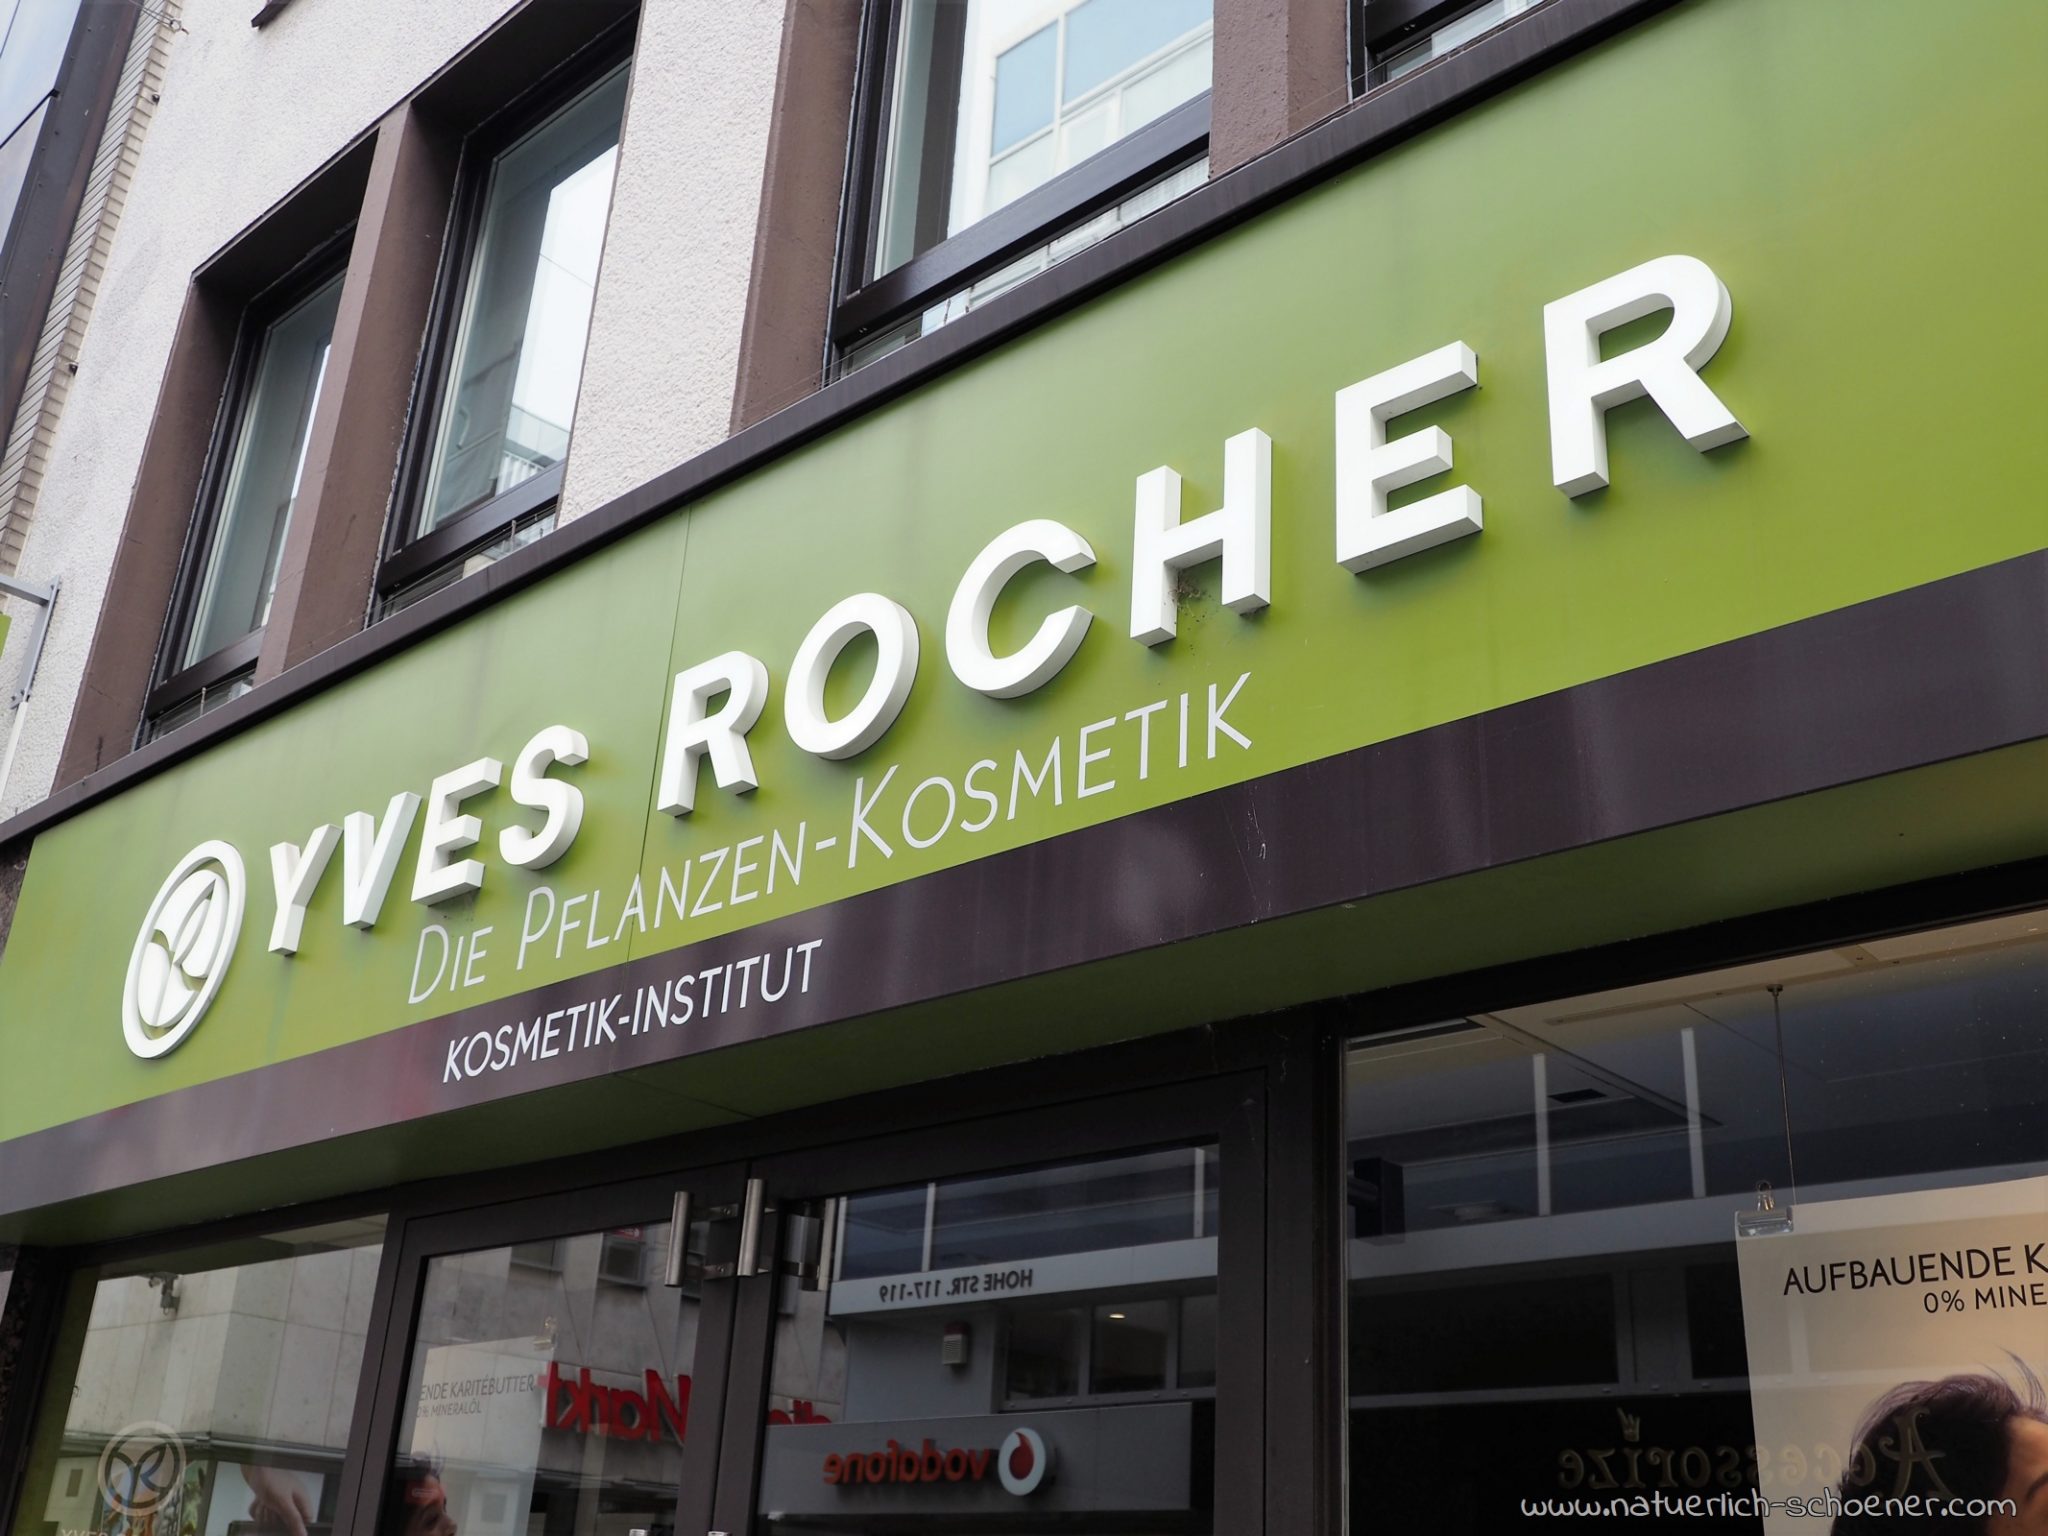 Yves Rocher in der Kölner Innenstadt